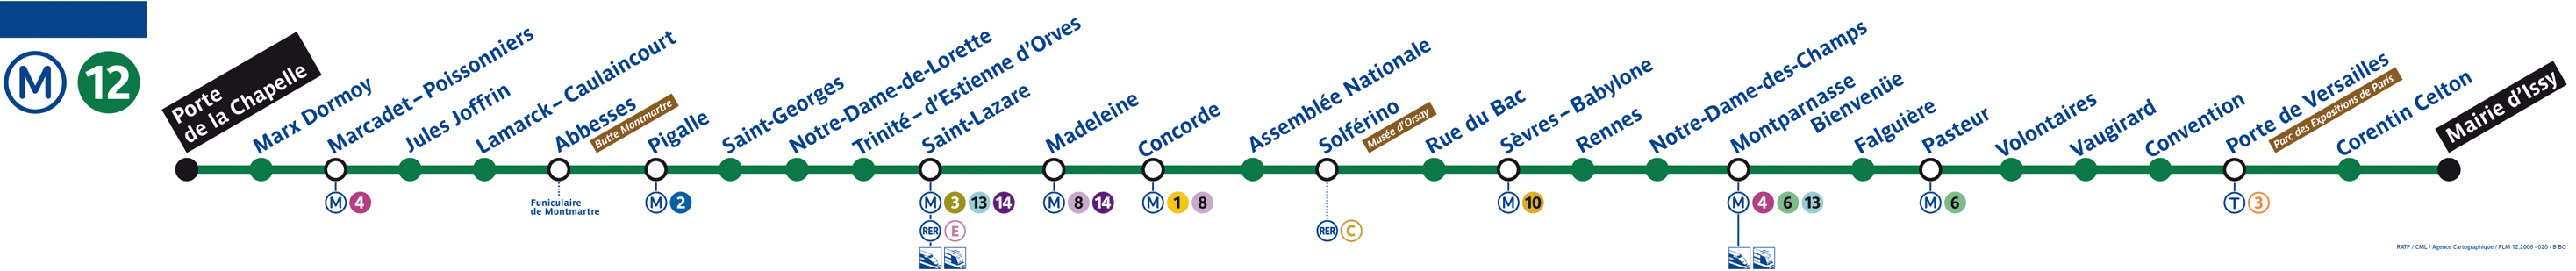 Plan ligne 12 métro de Paris